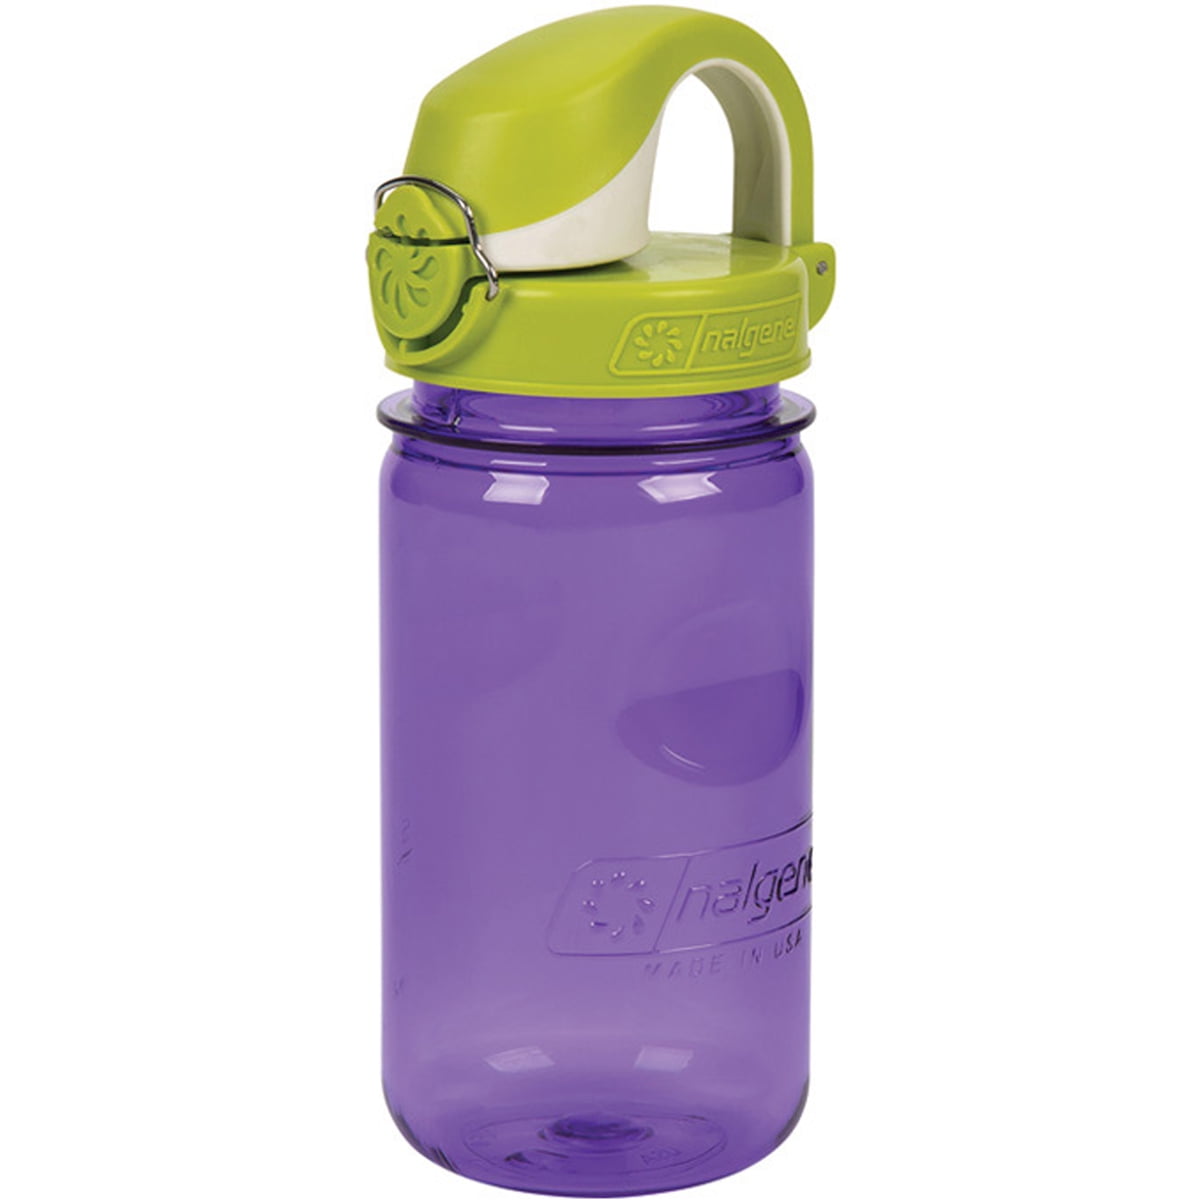 Nalgene Kids On the Fly Water Bottle - 12 oz. - Purple/Green